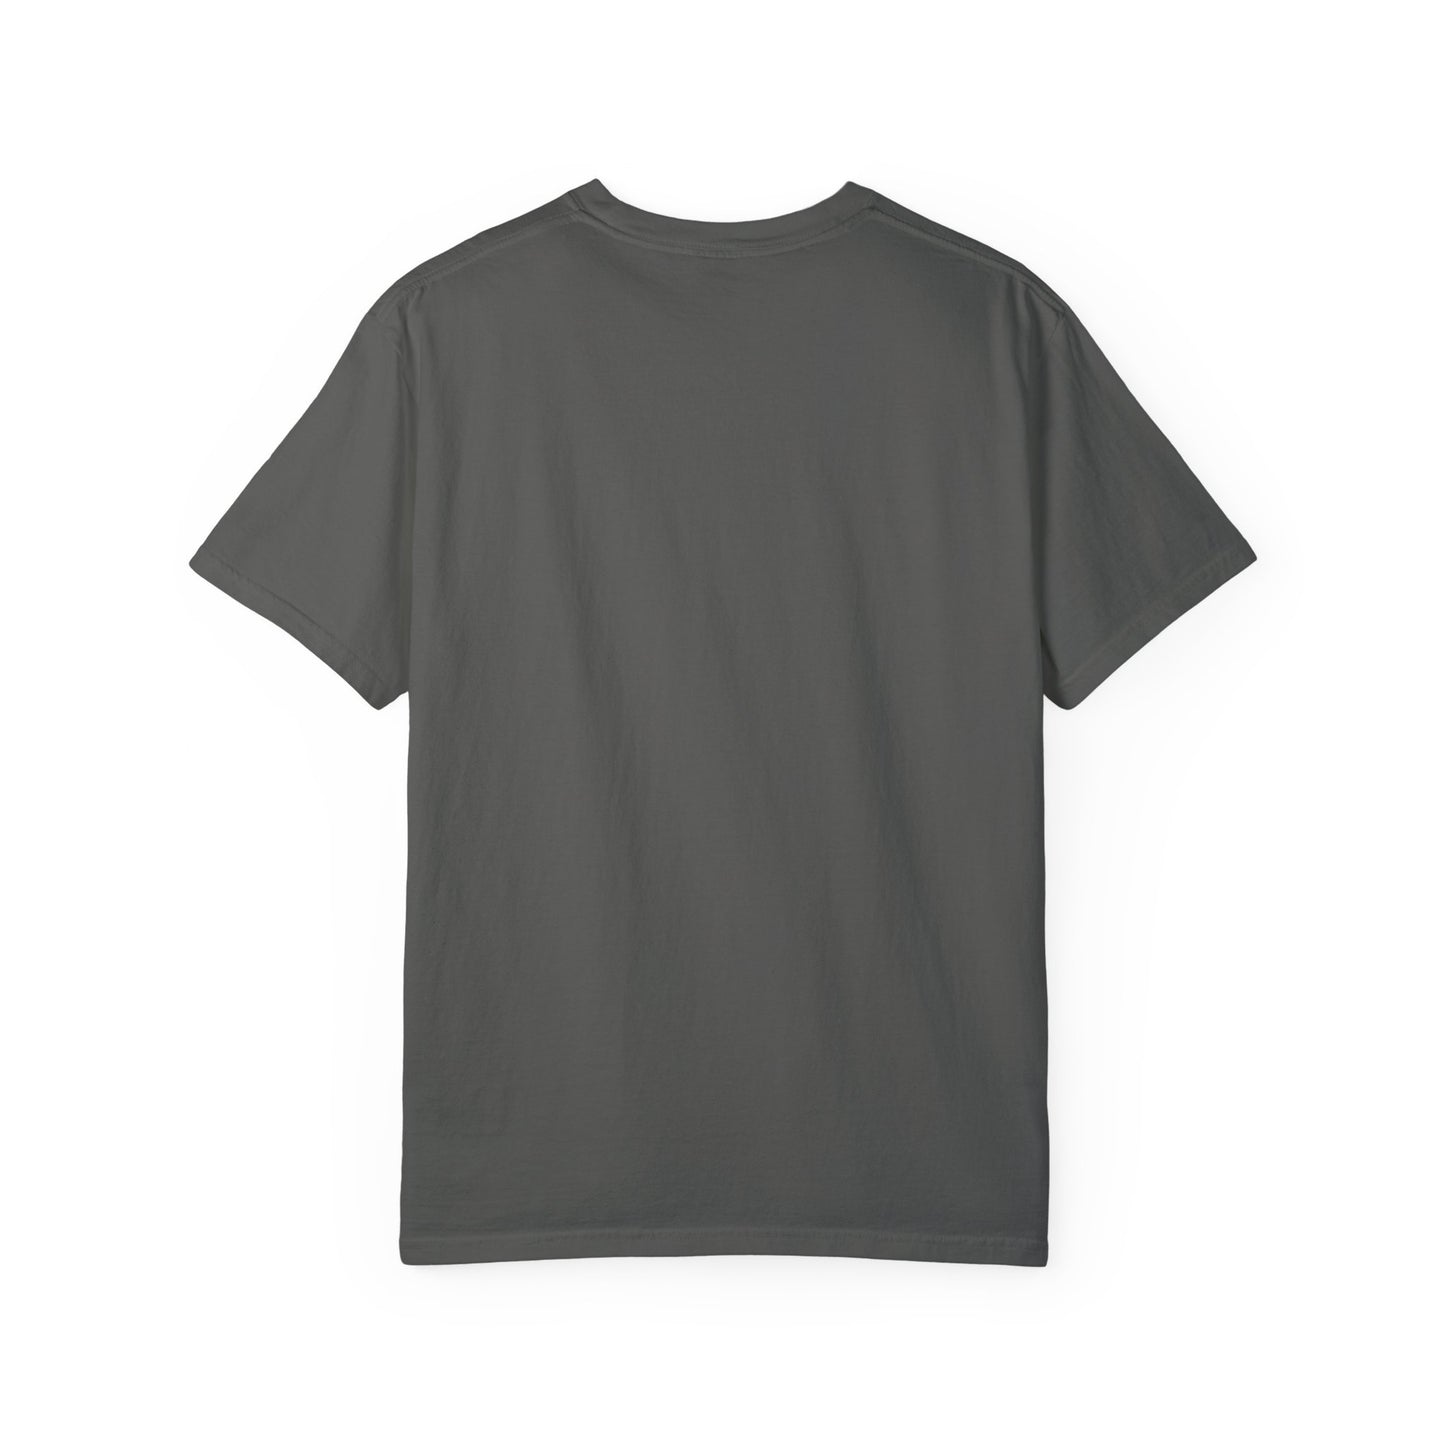 For Grandma & Grandson | Unisex Garment-Dyed T-shirt